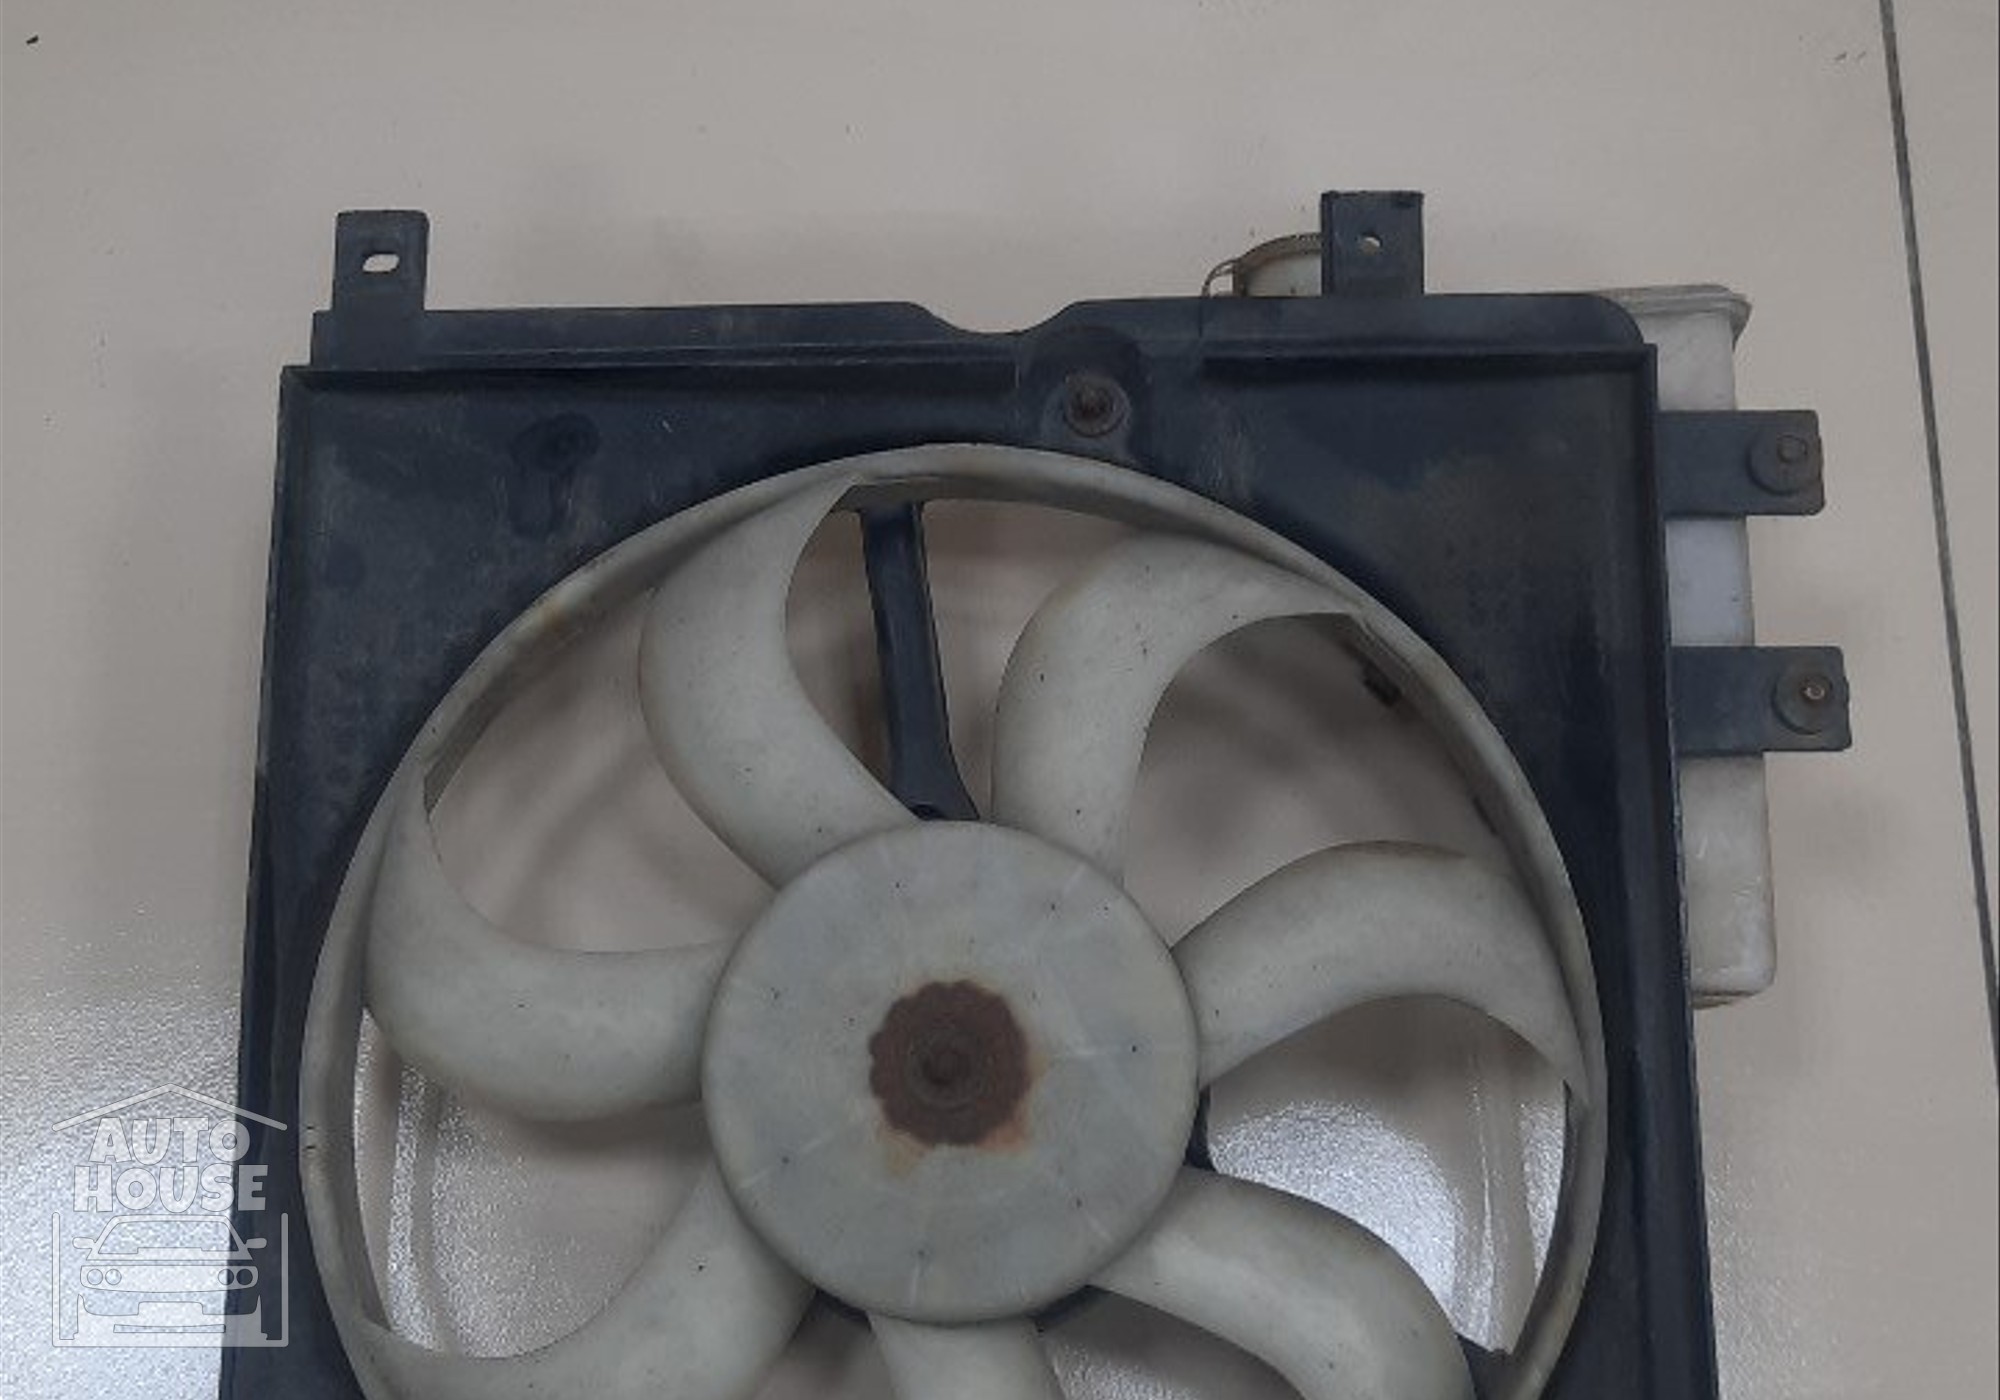 1016003507 Вентилятор радиатора для Geely MK (с 2006 по 2015)